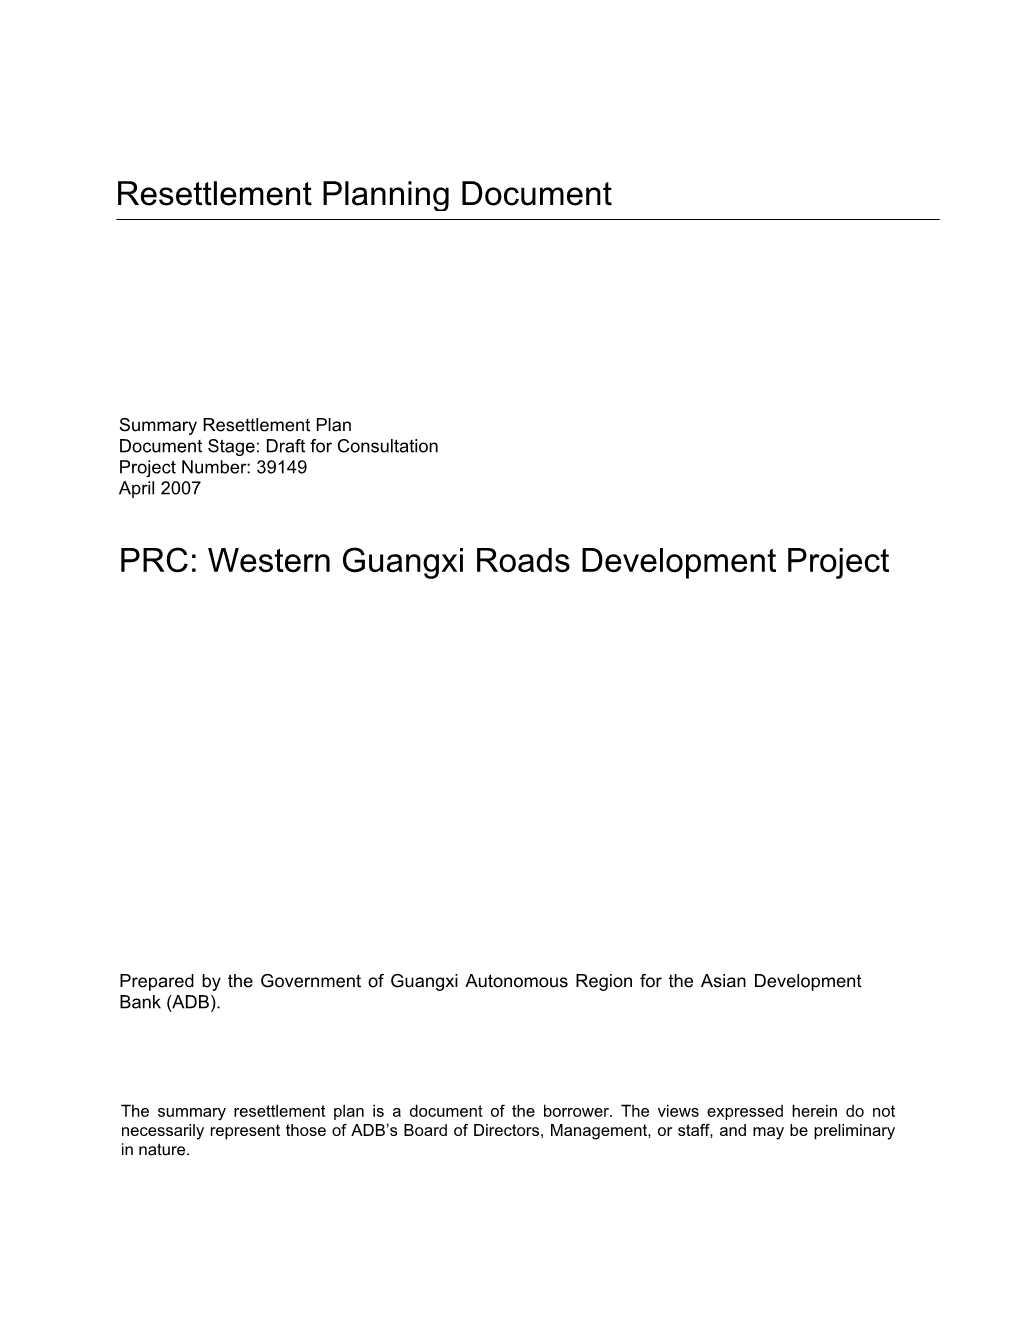 Western Guangxi Roads Development Project